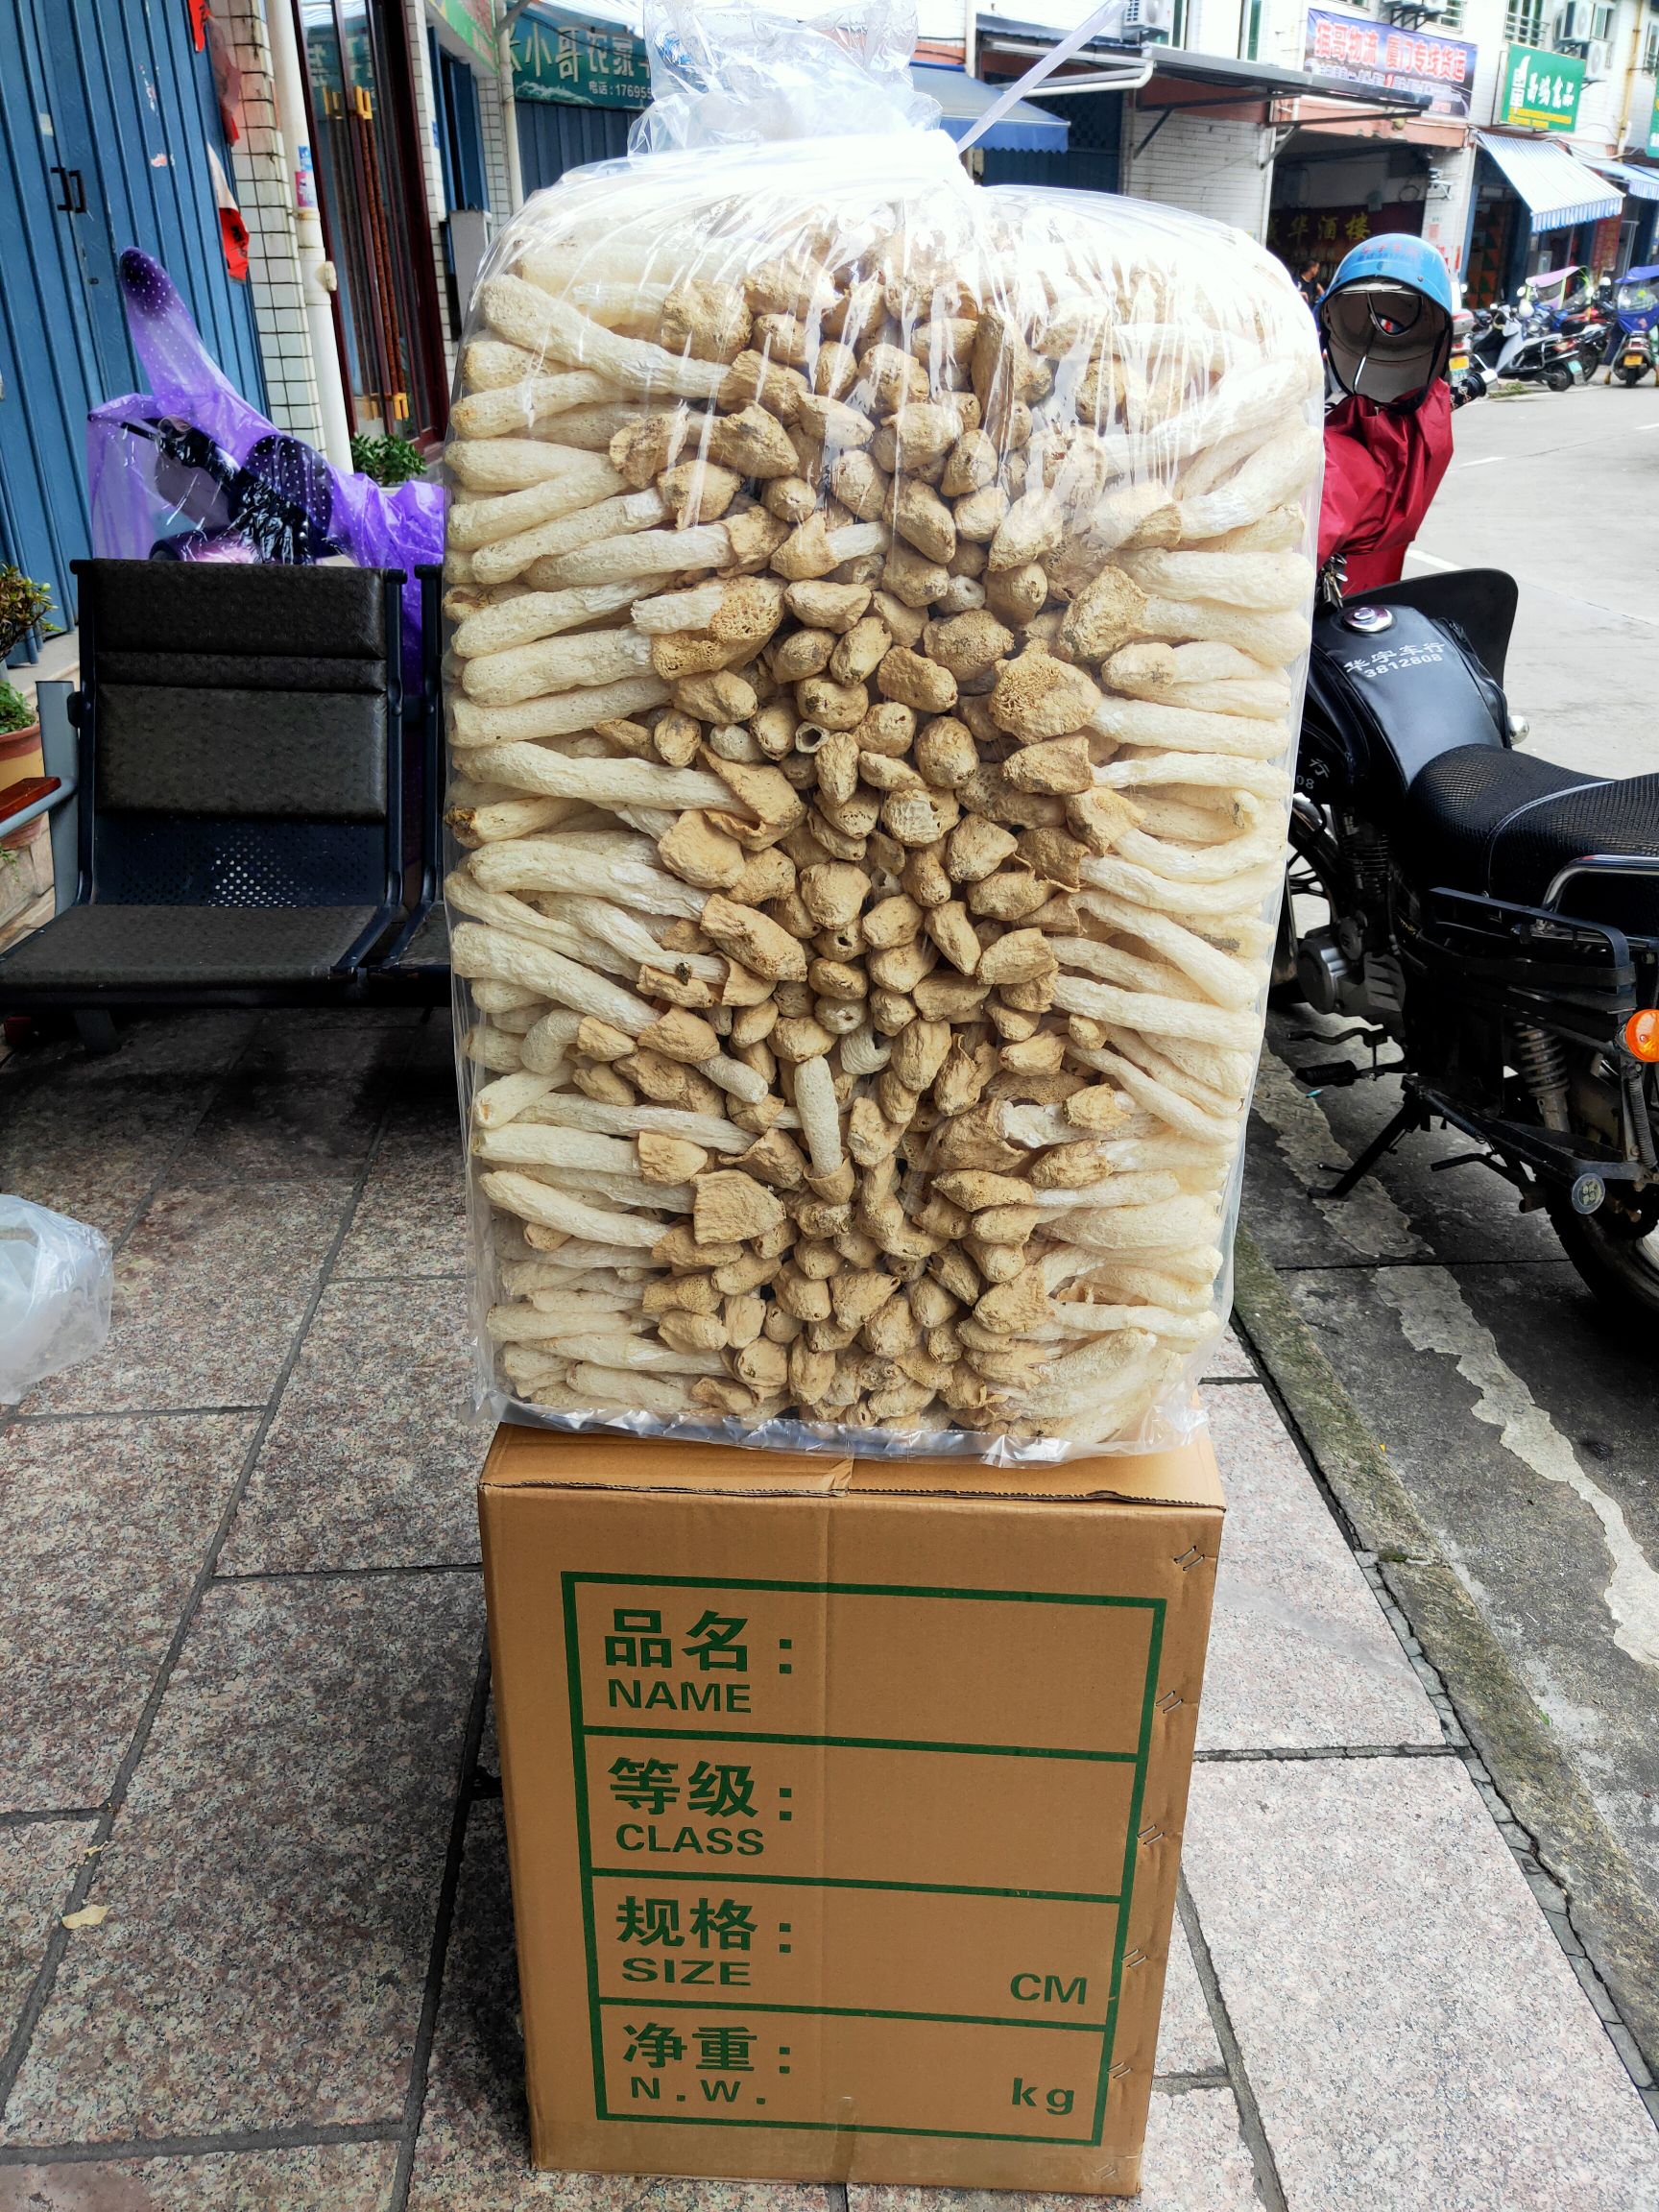 [竹荪批发] 竹荪蛋 头茬竹荪 10～15价格105元/斤